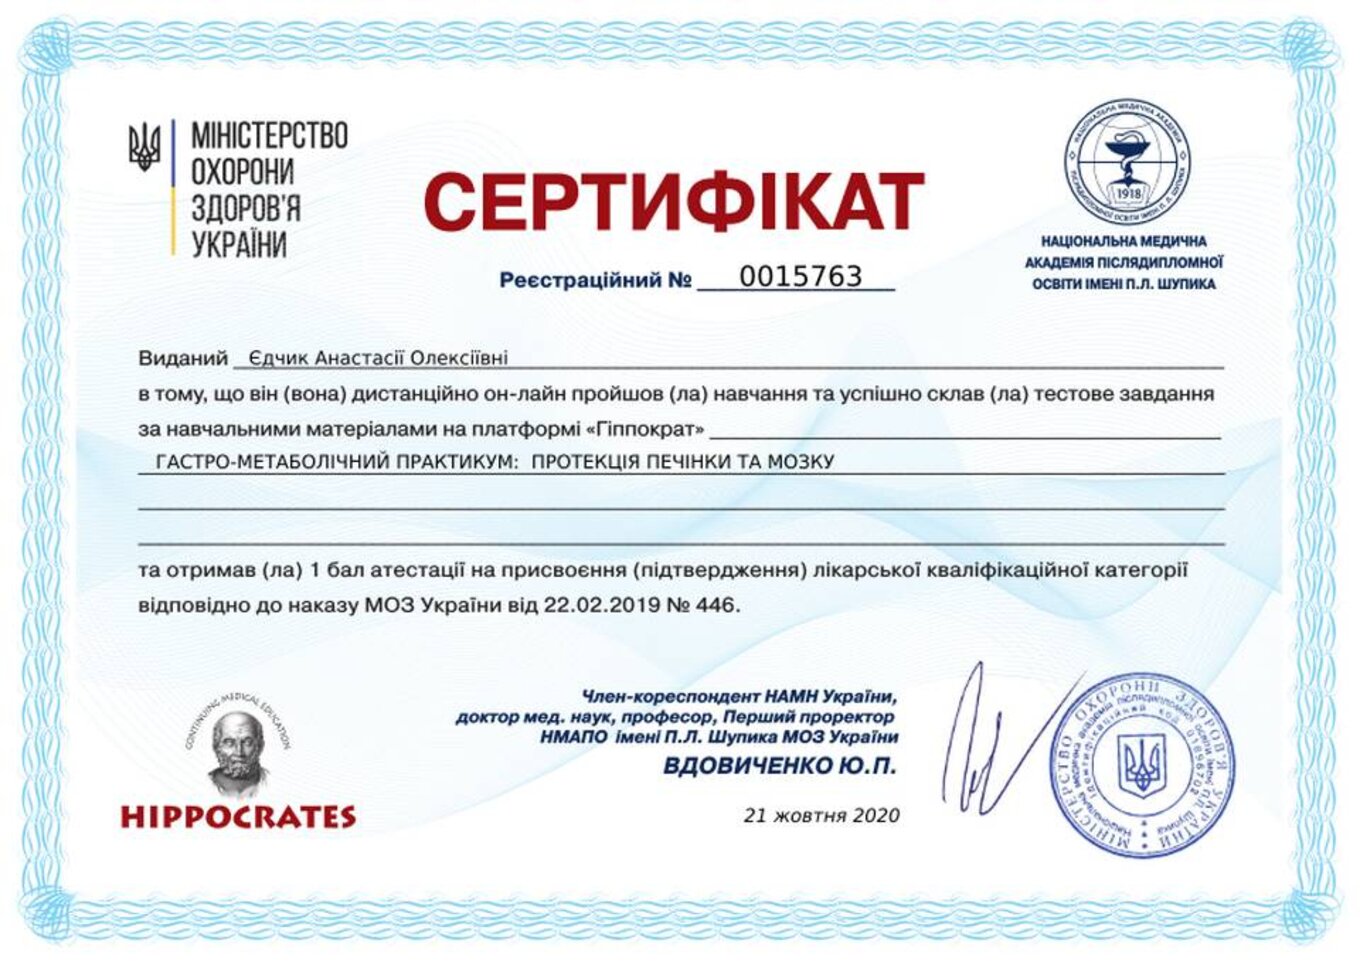 certificates/yedchik-anastasiya-oleksiyivna/erc-edchik-cert-59.jpg